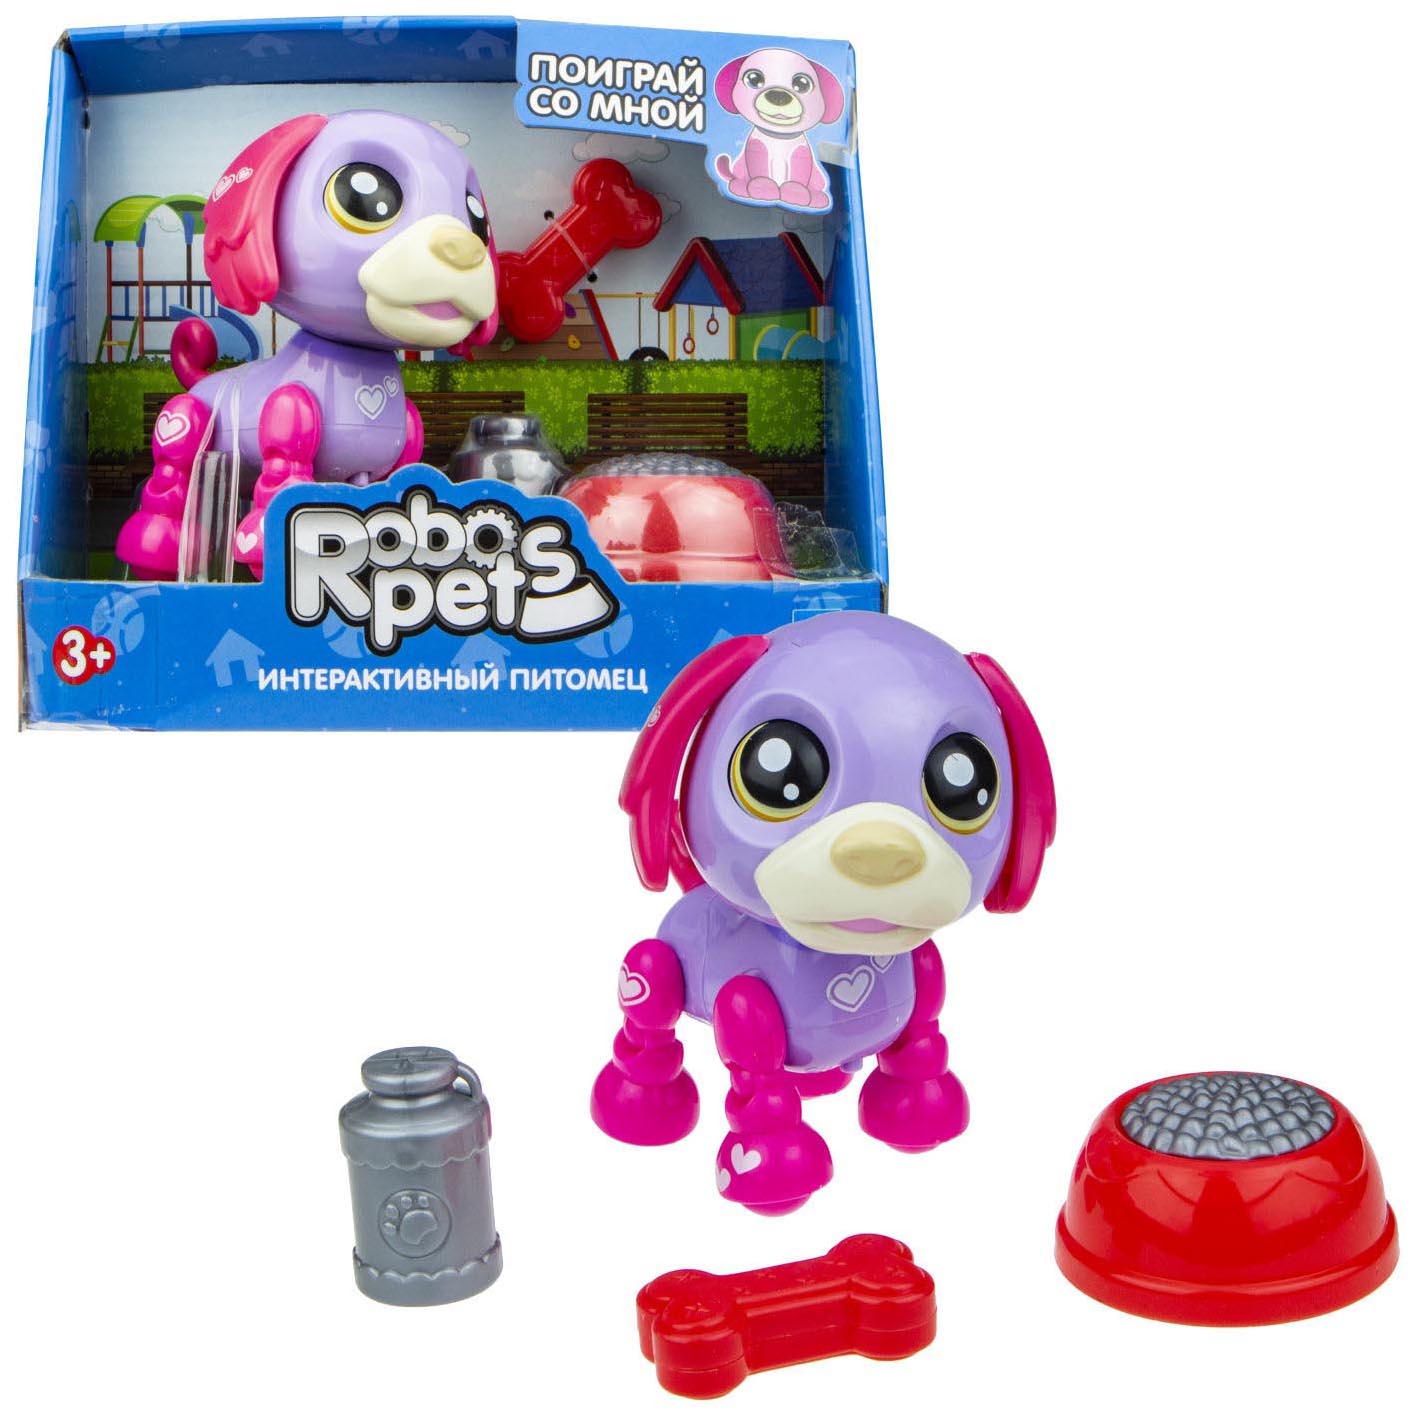 Интерактивная игрушка 1toy Robo Pets Озорной щенок Т16938 фиолетово-фуксия интерактивная игрушка 1toy robo pets озорной щенок т16938 фиолетово фуксия